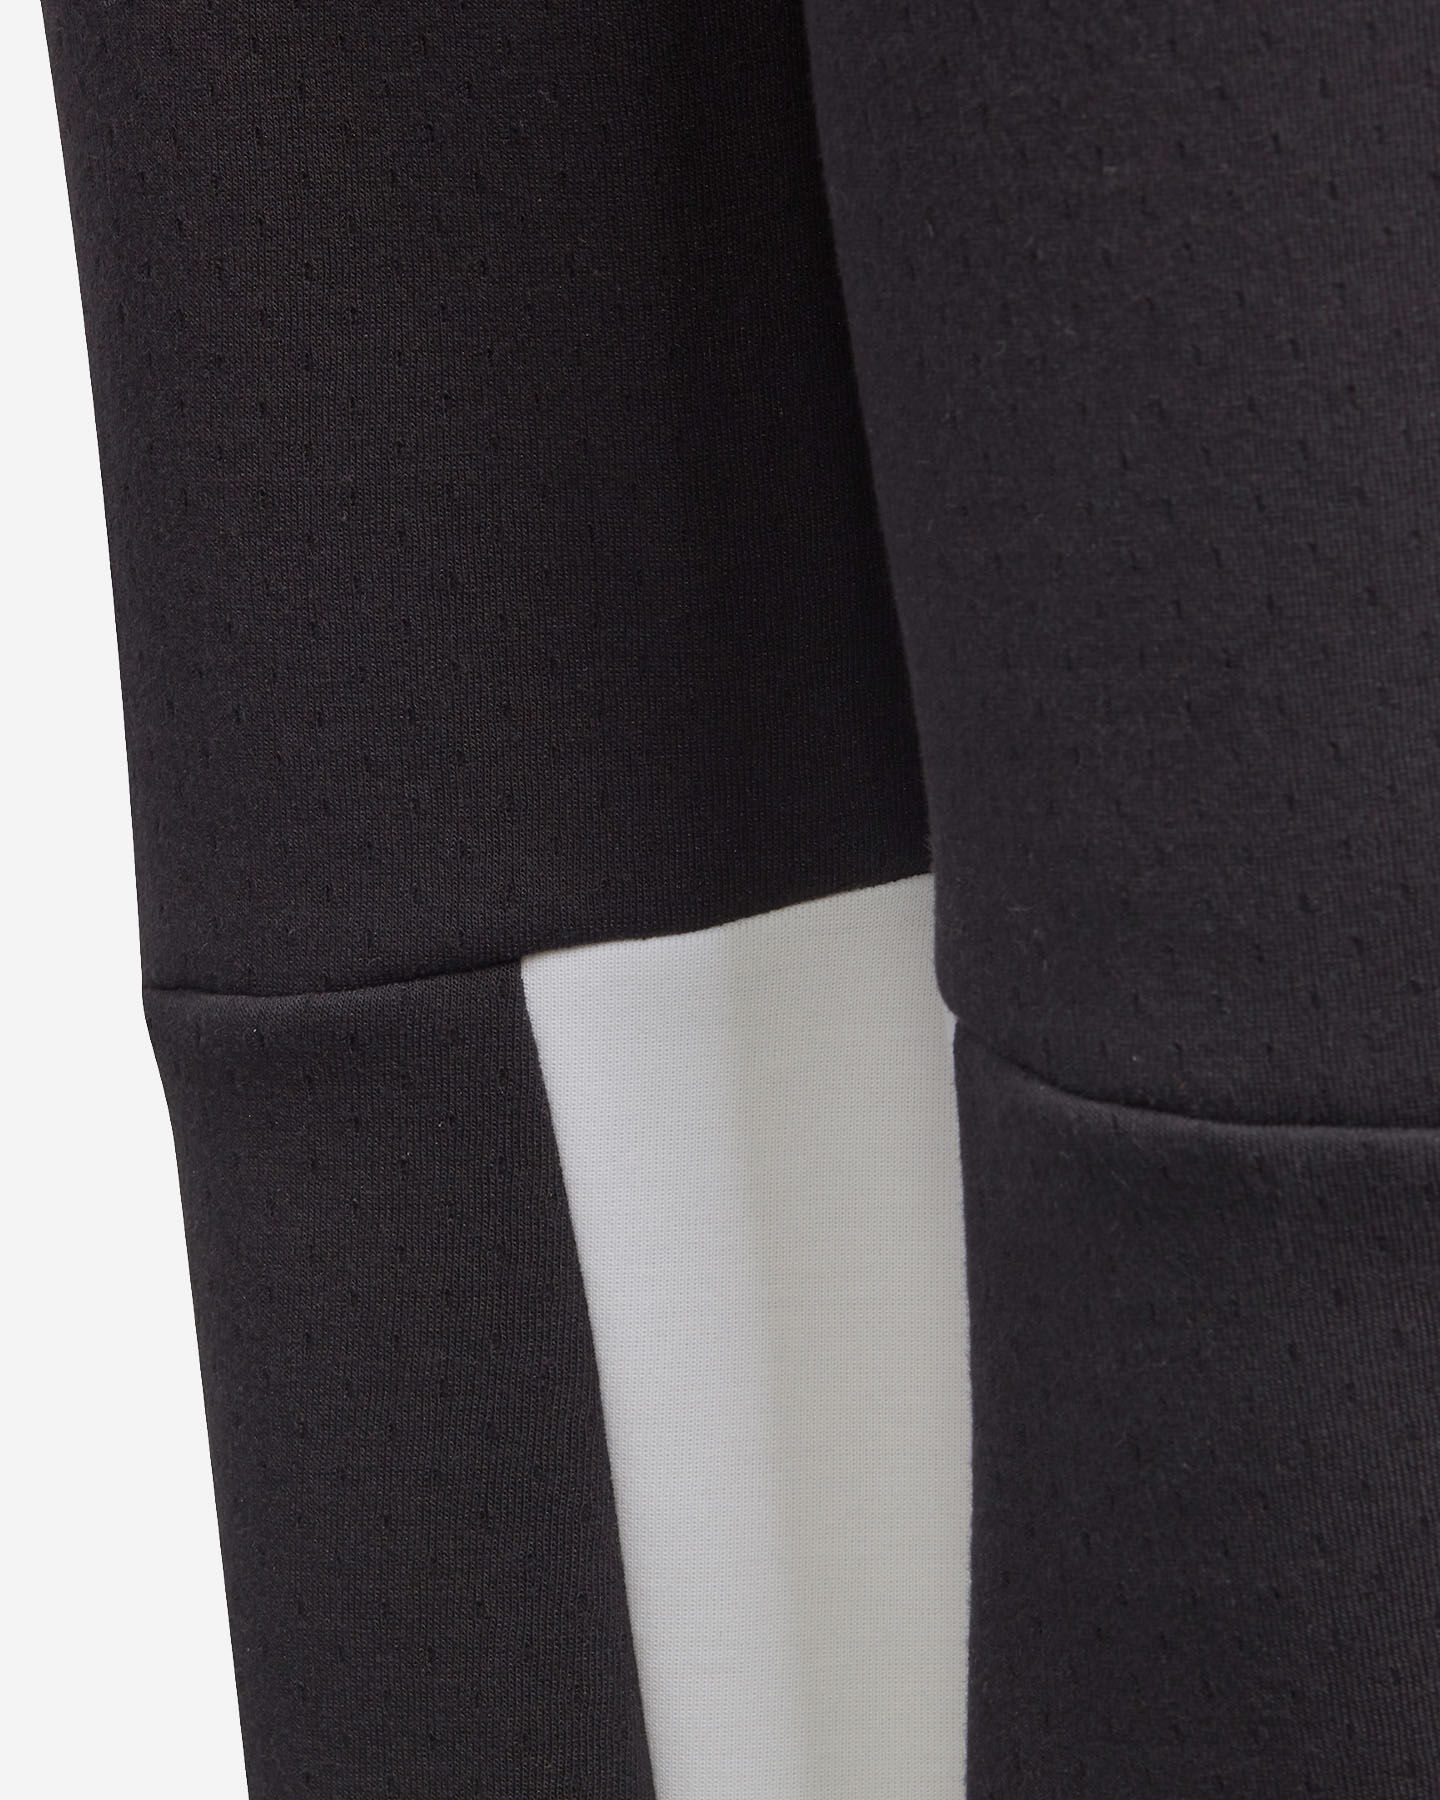  Pantalone ADIDAS ZONE  JR S5228126|UNI|7-8A scatto 4